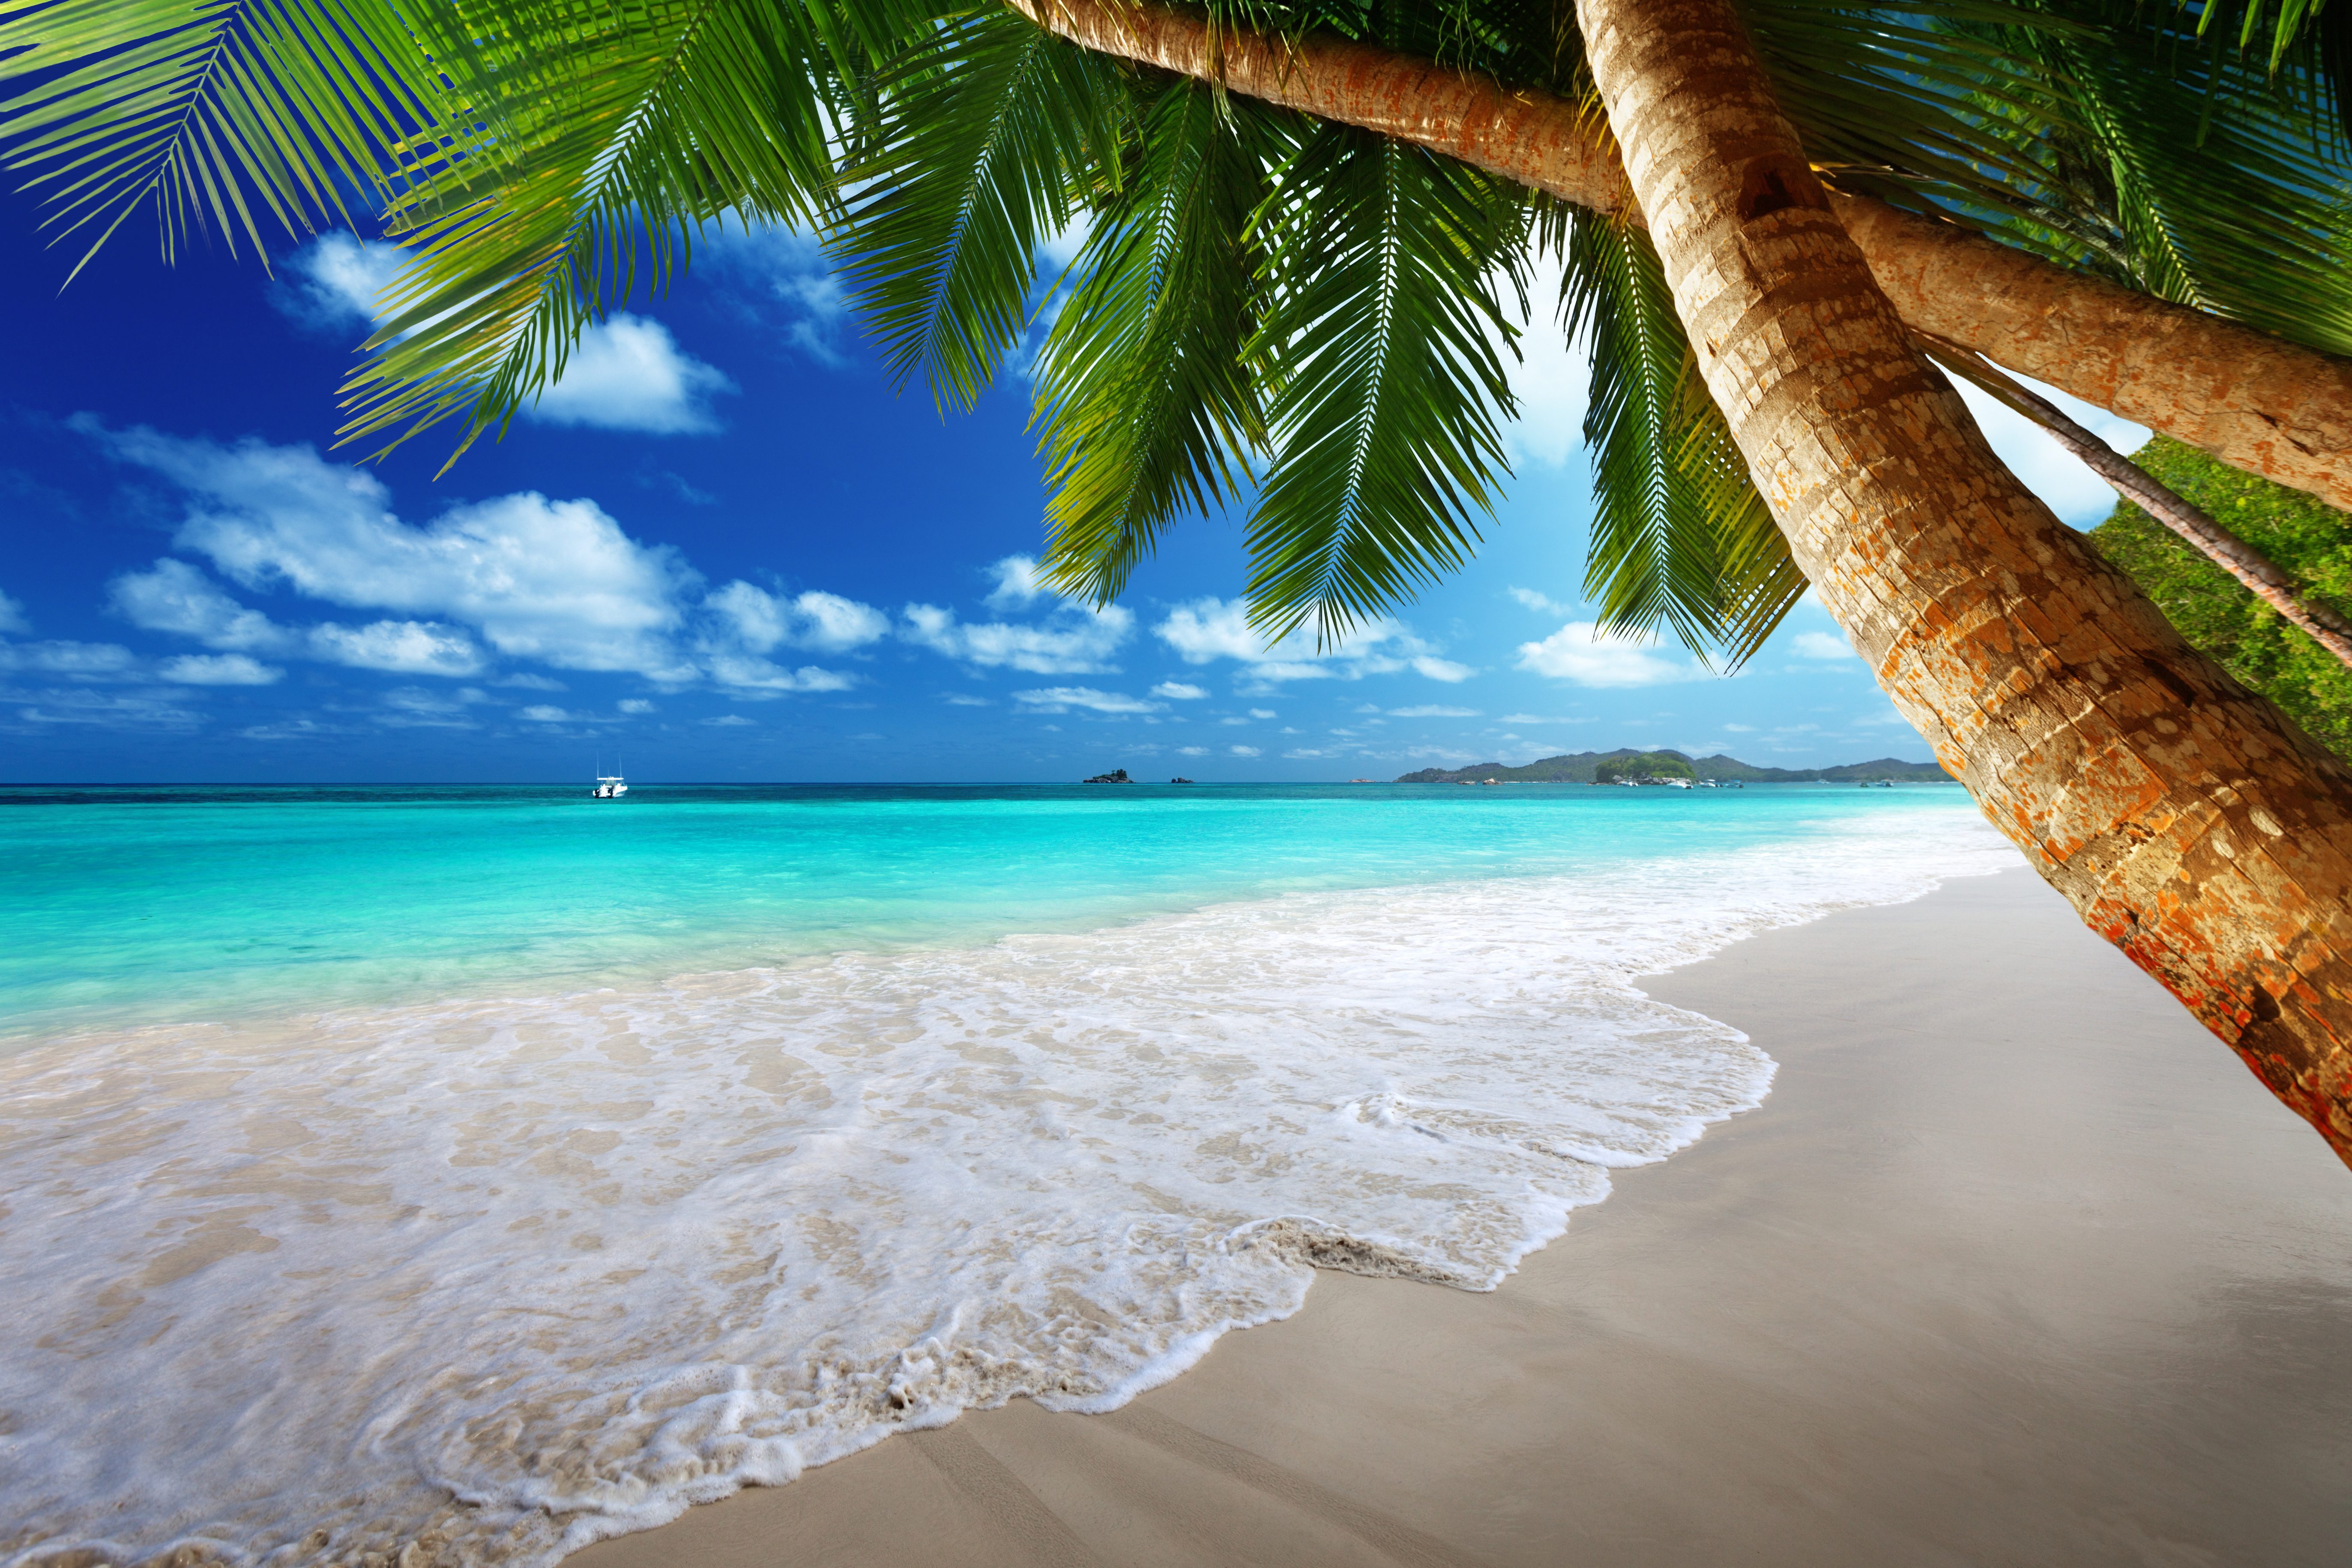 Изображения на рабочий стол компьютера. Парадиз остров Карибского моря. Красивый пляж. Заставка на рабочий стол море пляж. Райский пляж.